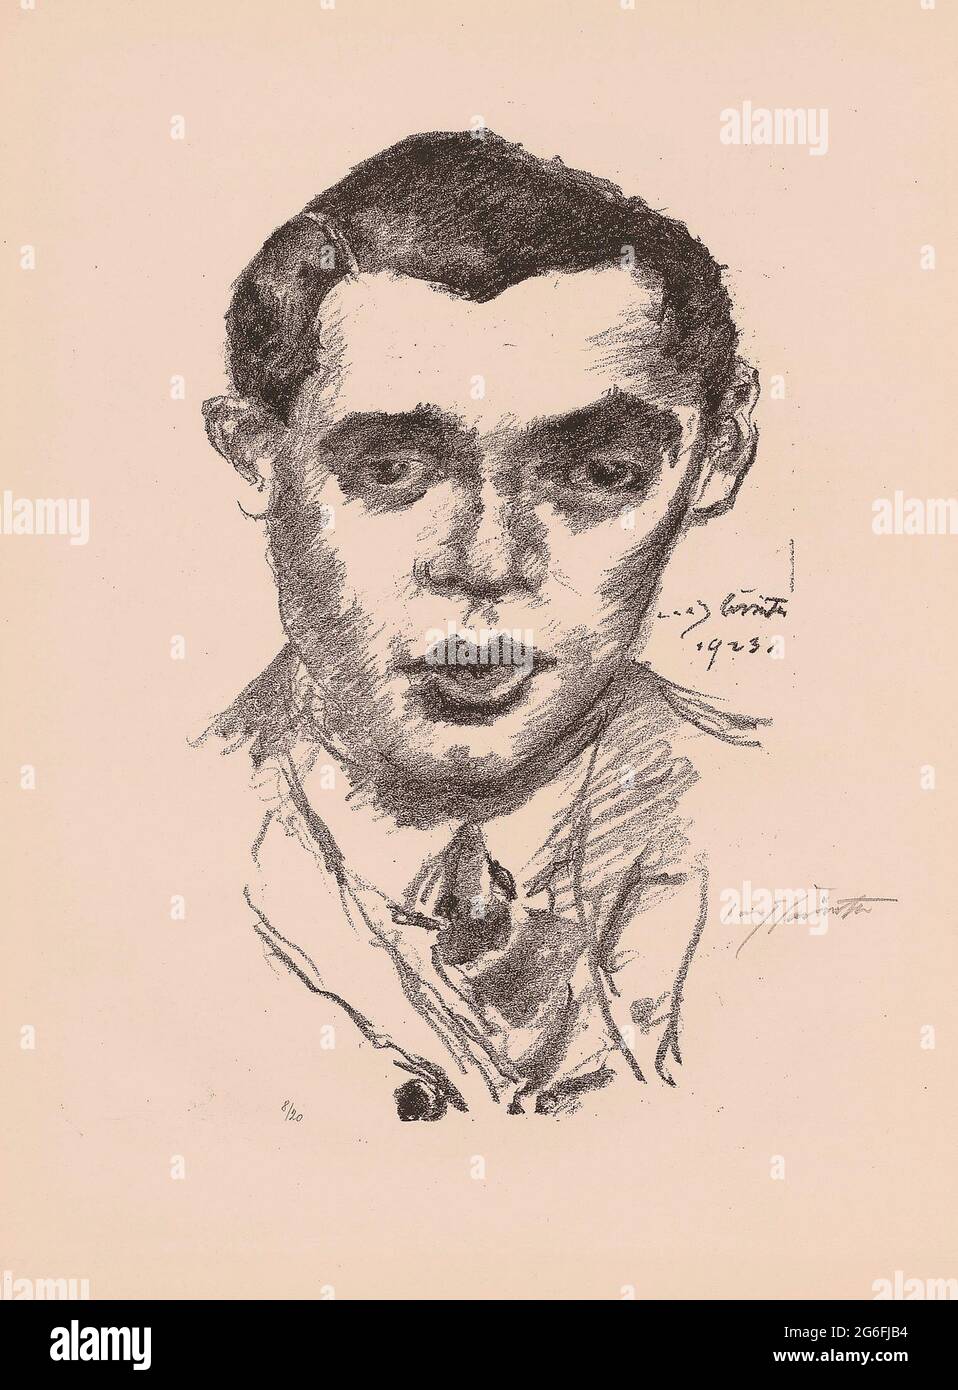 Autor: Lovis Corinth. Marczinsky - 1923 - Lovis Corinto Alemán, 1858-1925. Litografía sobre papel en crema. Alemania. Foto de stock